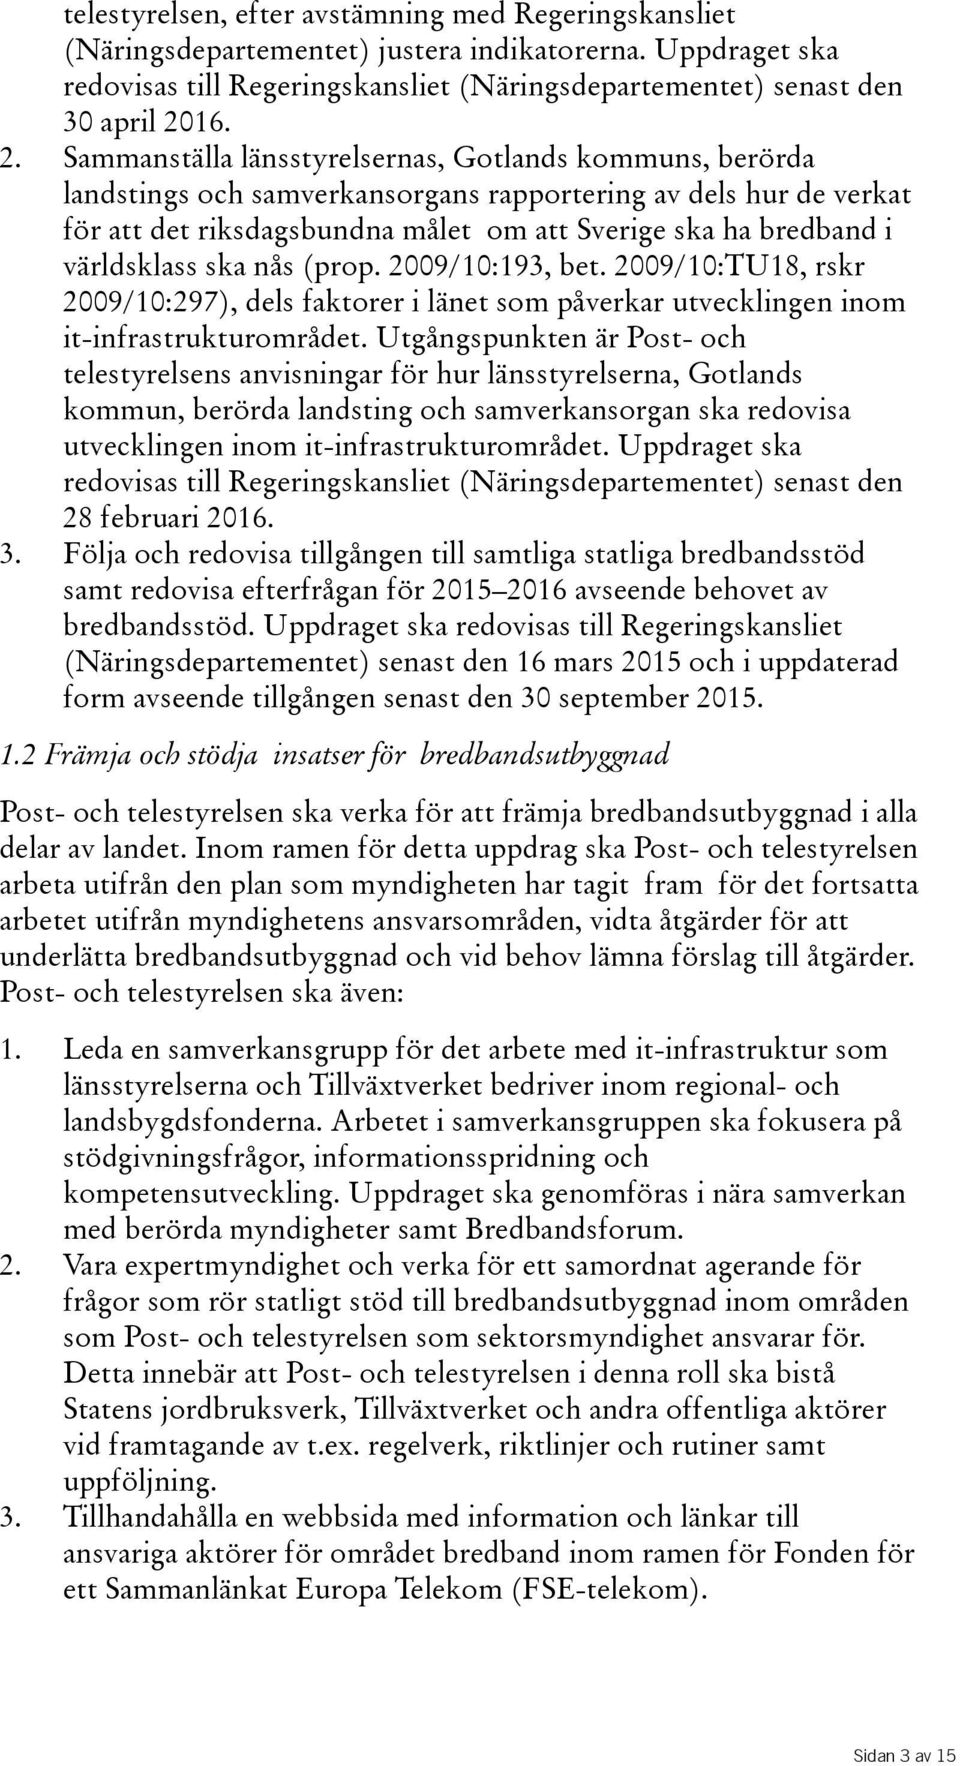 Sammanställa länsstyrelsernas, Gotlands kommuns, berörda landstings och samverkansorgans rapportering av dels hur de verkat för att det riksdagsbundna målet om att Sverige ska ha bredband i